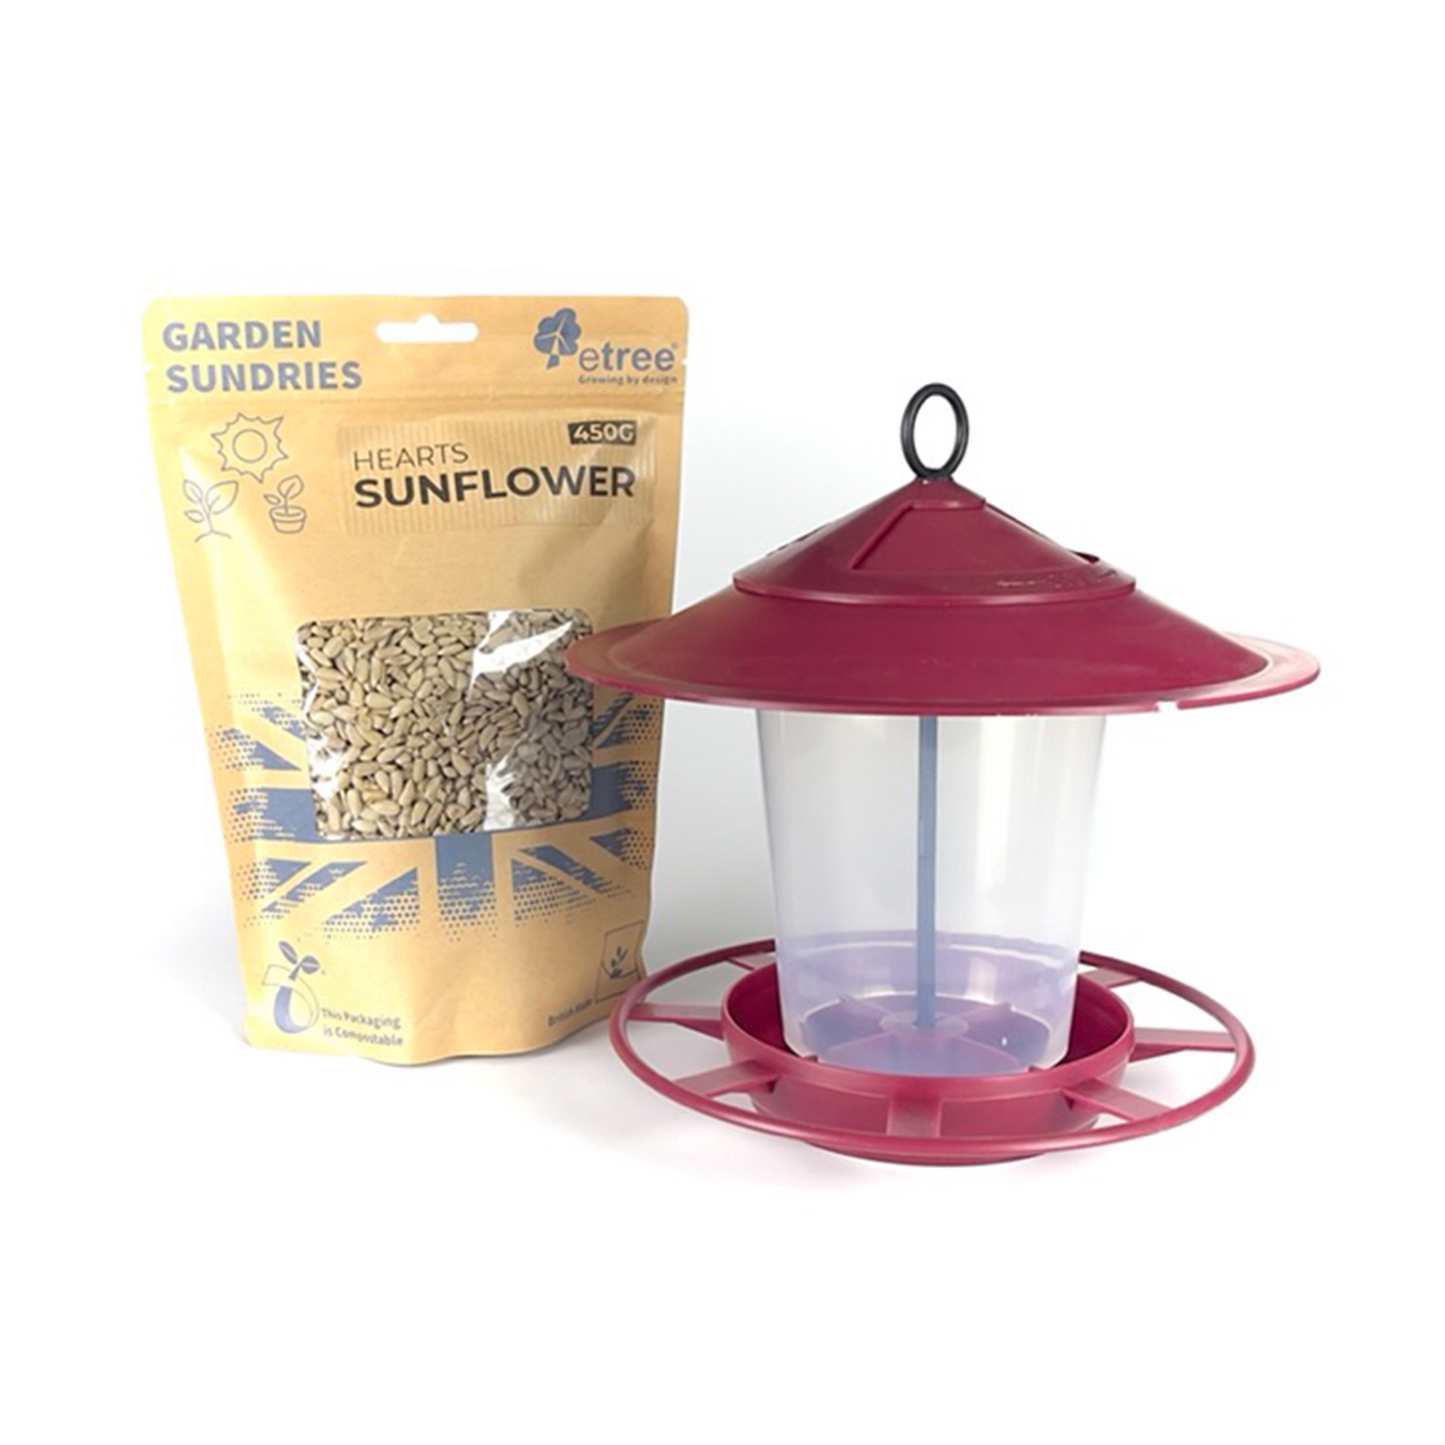 Pre Filled Hanging Lantern Bird Feeder Gift Set & Sunflower Hearts Wild Bird Seed (450g)-6